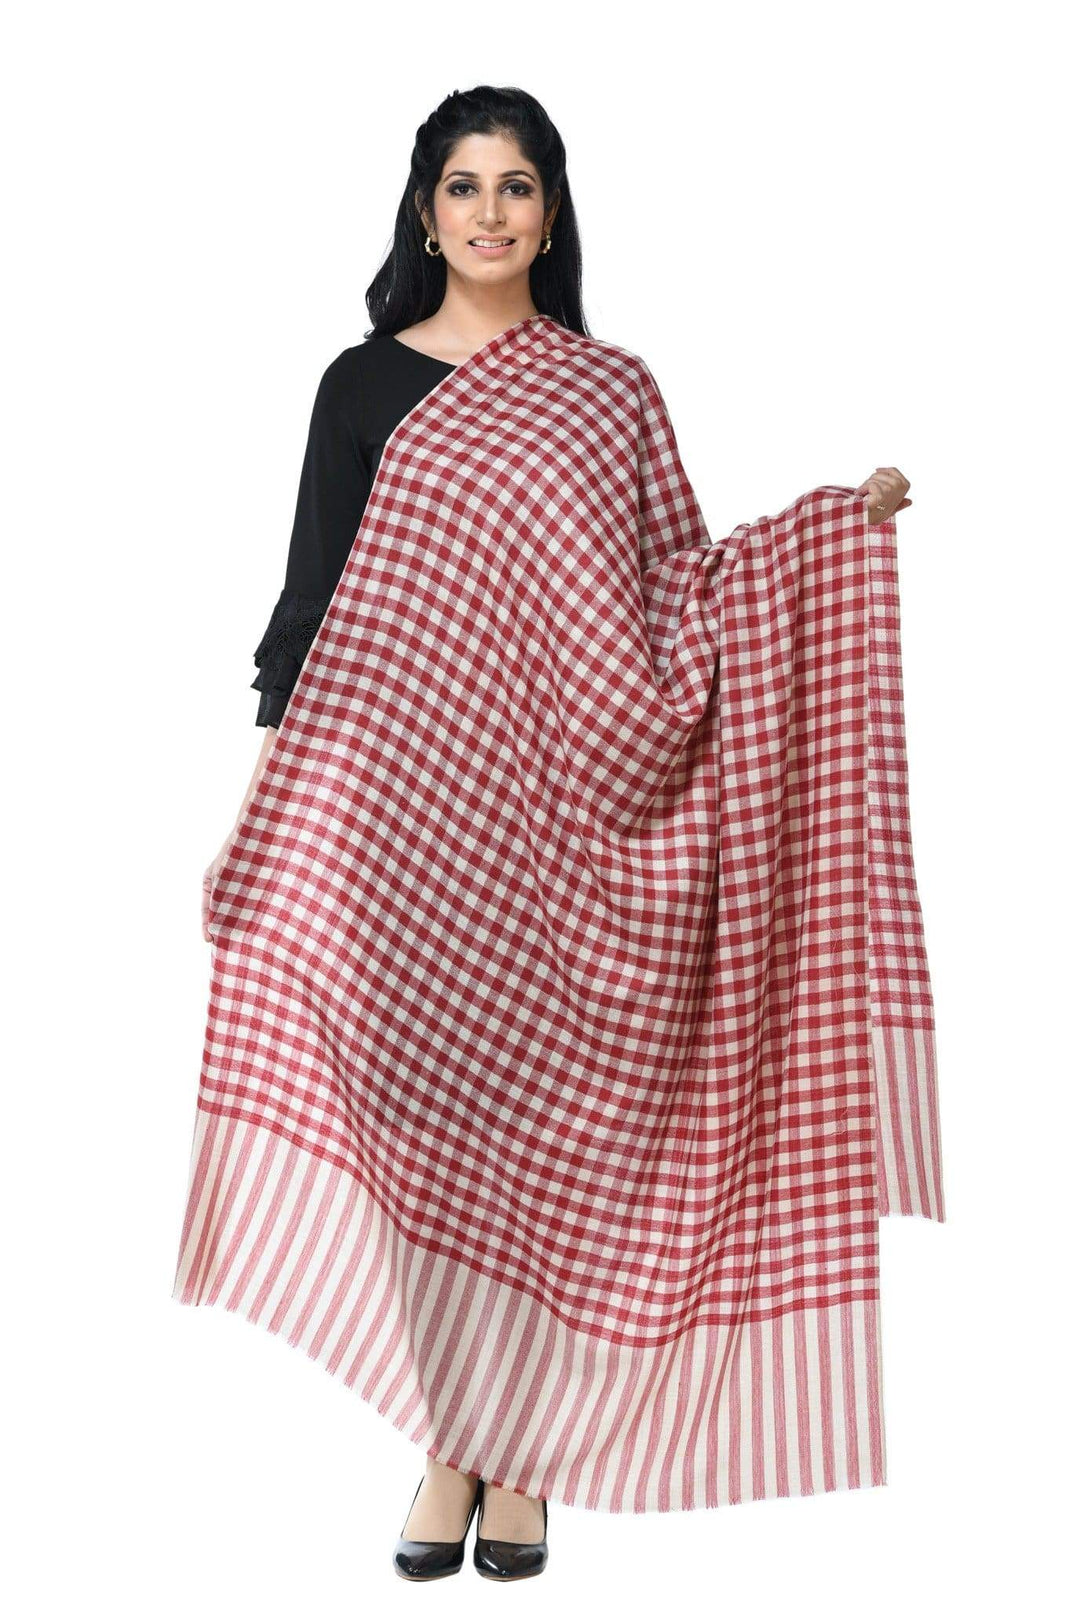 Pashwool 100x200 Pashwool Womens Fine Wool Shawl, Soft and Warm, Checkered Weave